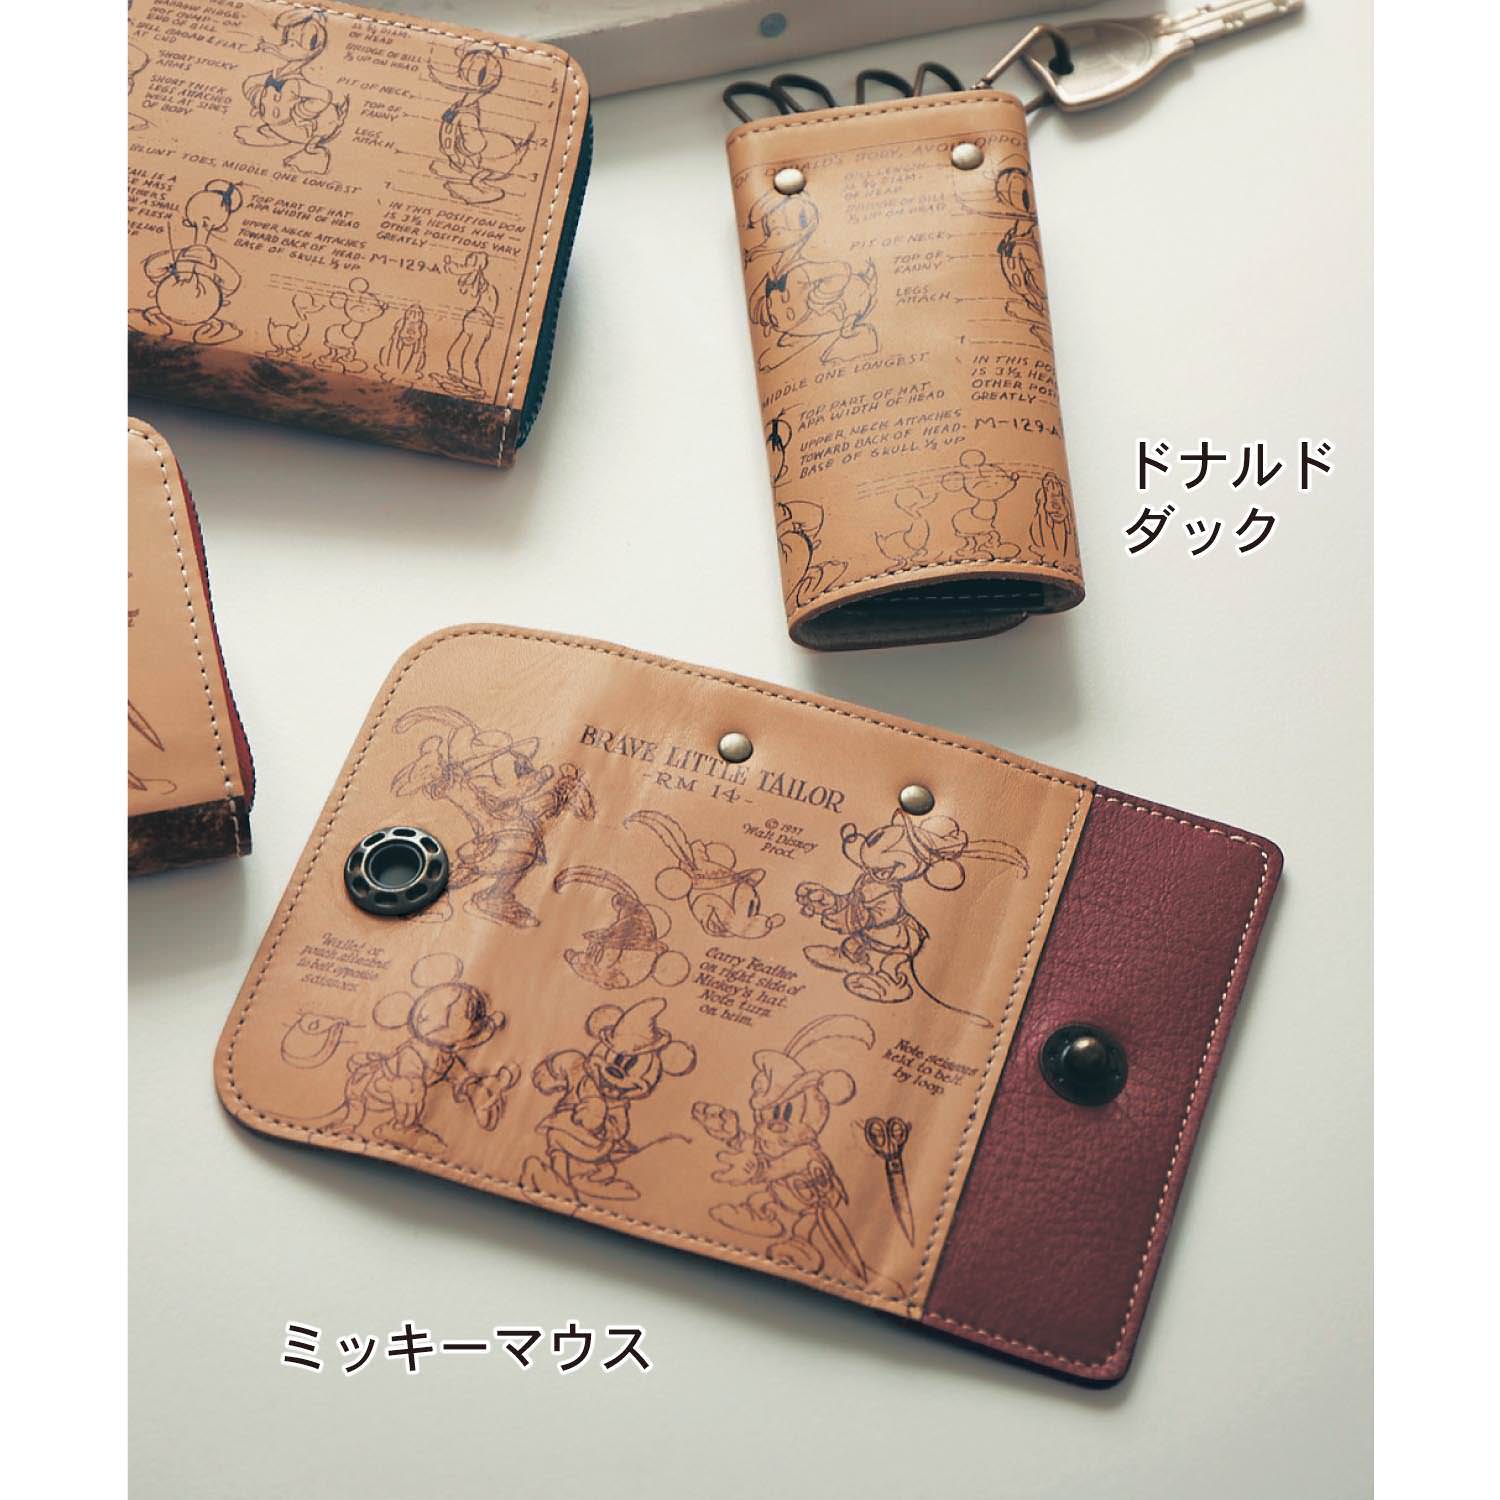 大人にふさわしい本革の上質感 ベルメゾン ディズニーデザイン 日本製レザーキーケース Dtimes